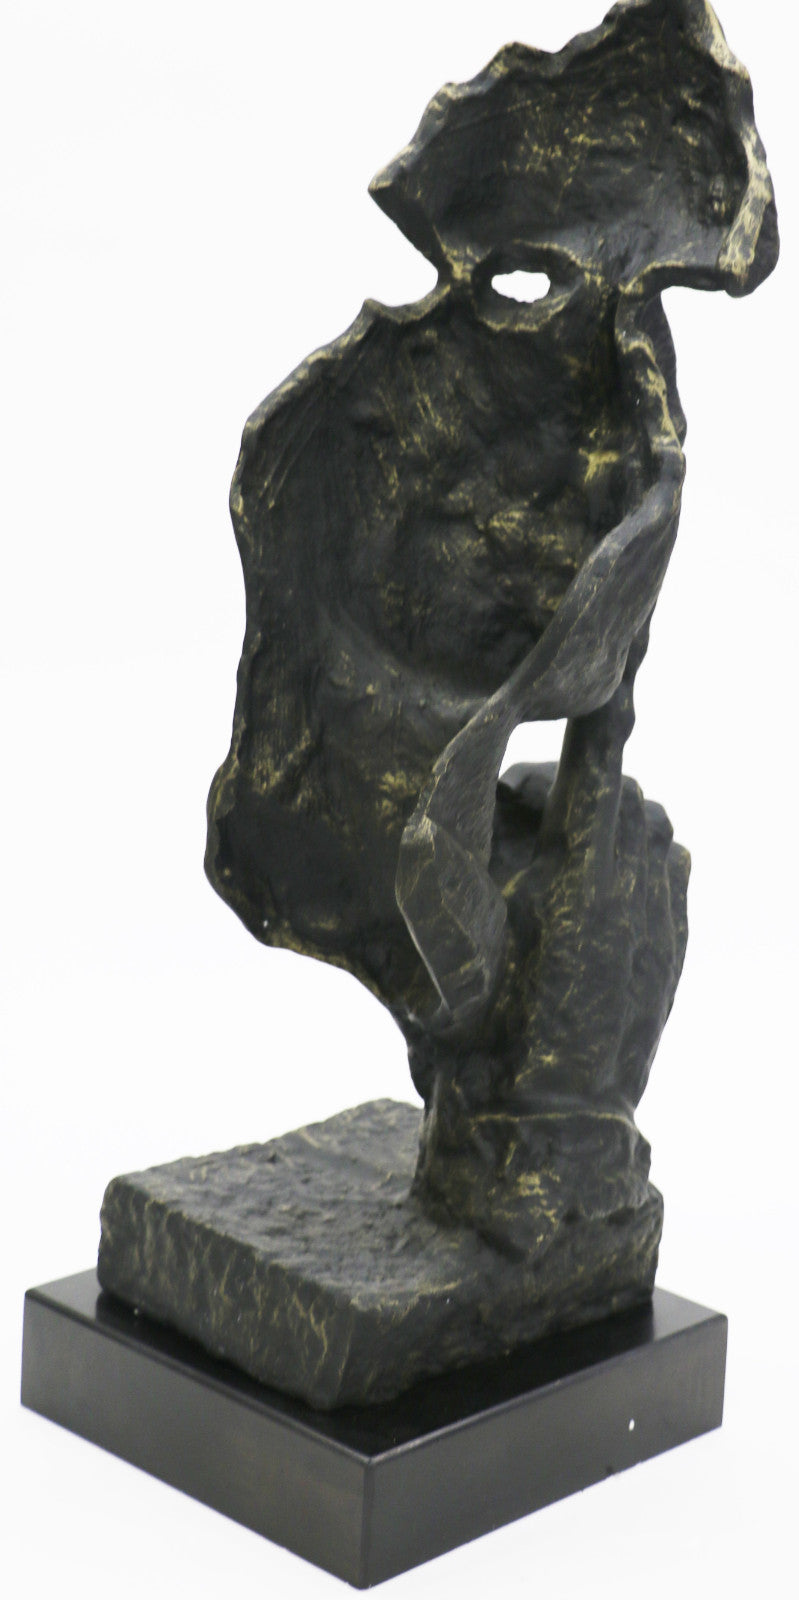 Salvador Dali Modern Art Silence Man Bust Figure Decor Bronze Sculpture Statue